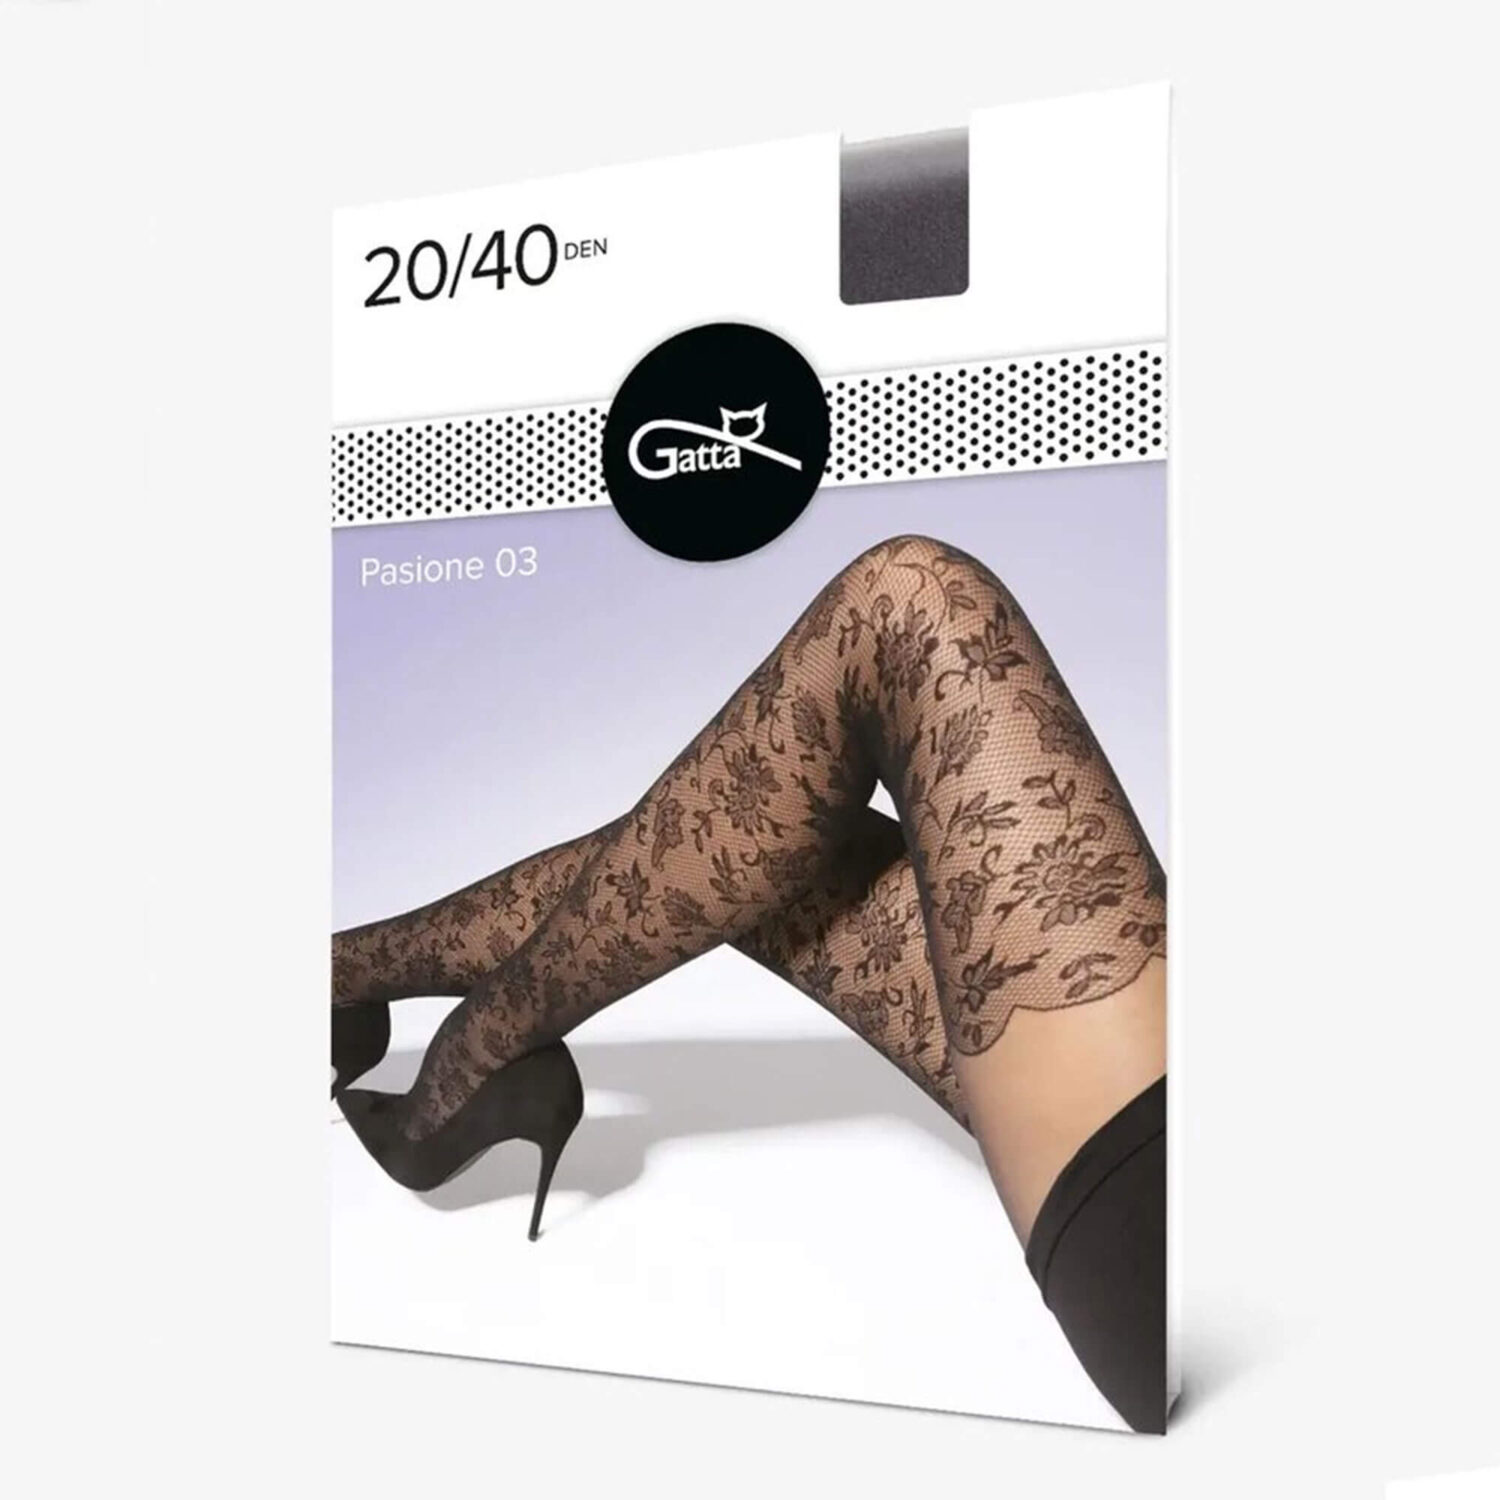 Дамски фигурален черен чорапогащник Pasione 03 с ефект чорапи от ситна мрежа | Gatta